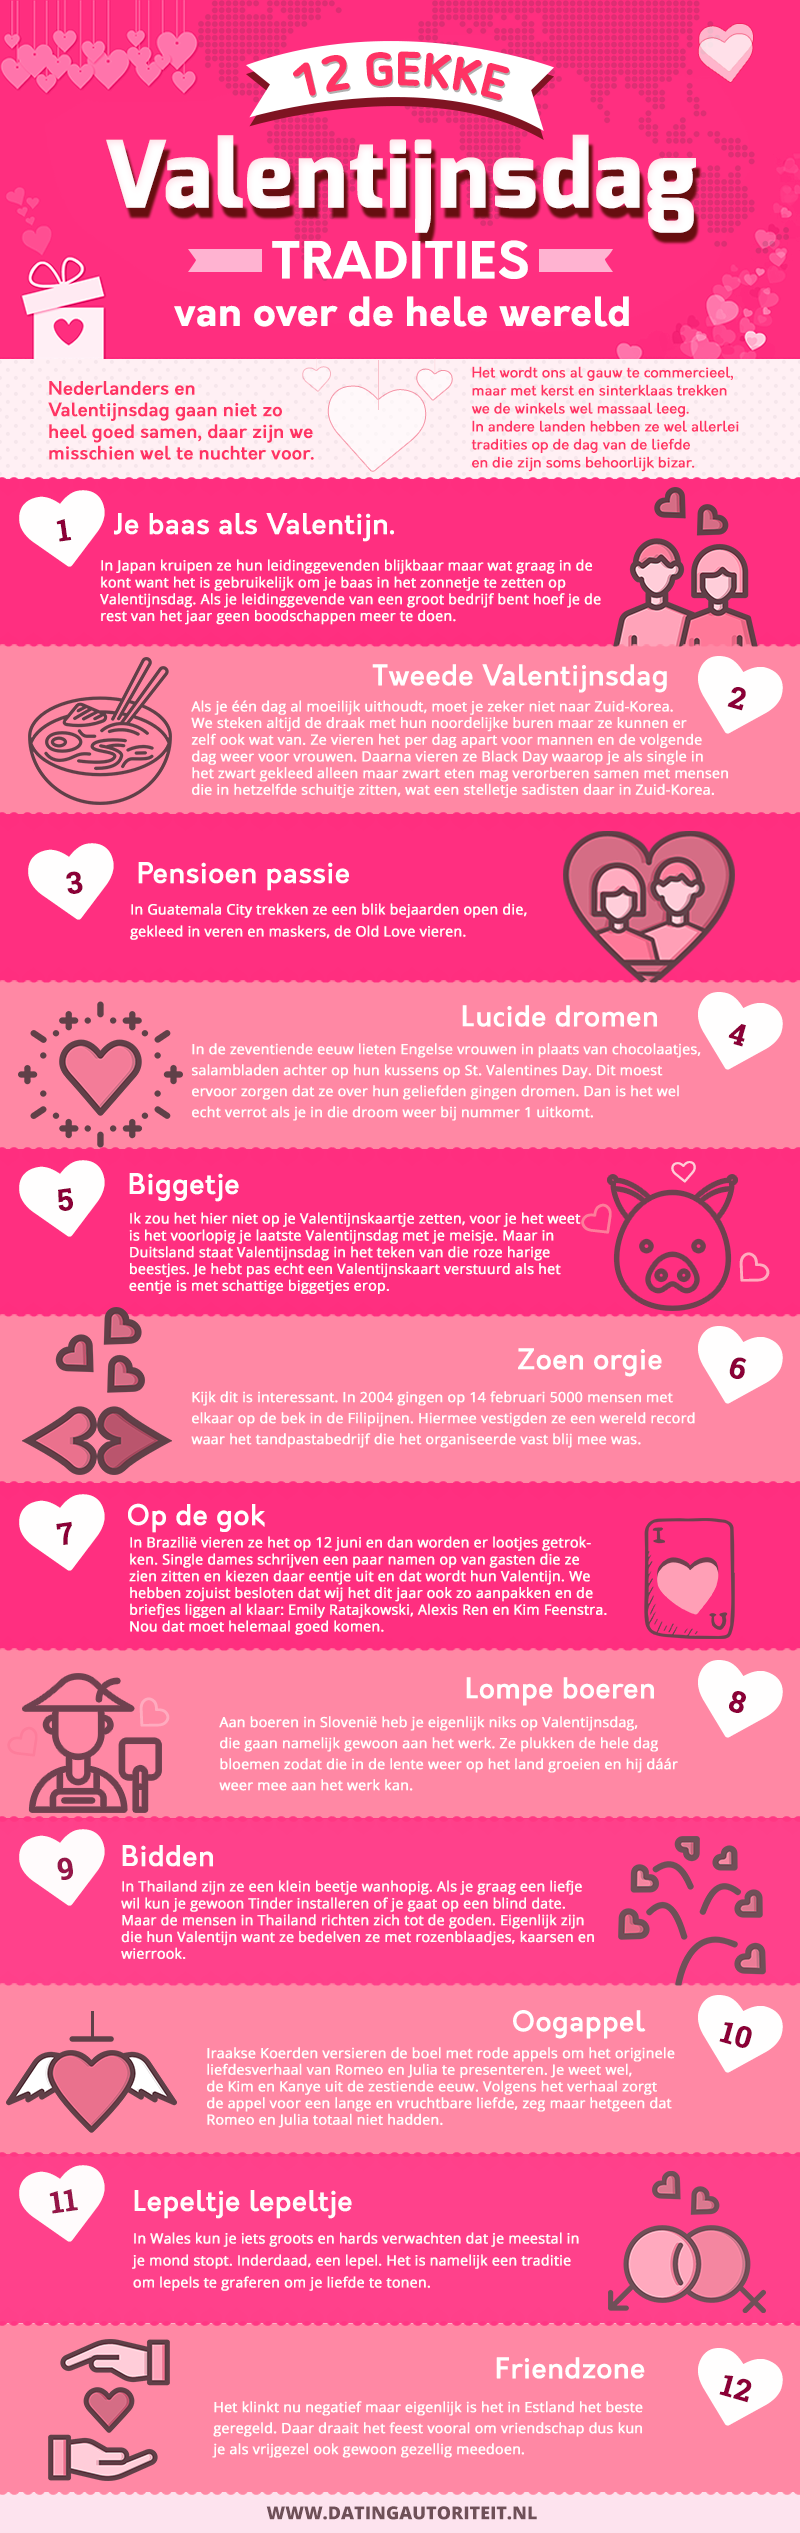 12 gekke valentijnsdag tradities